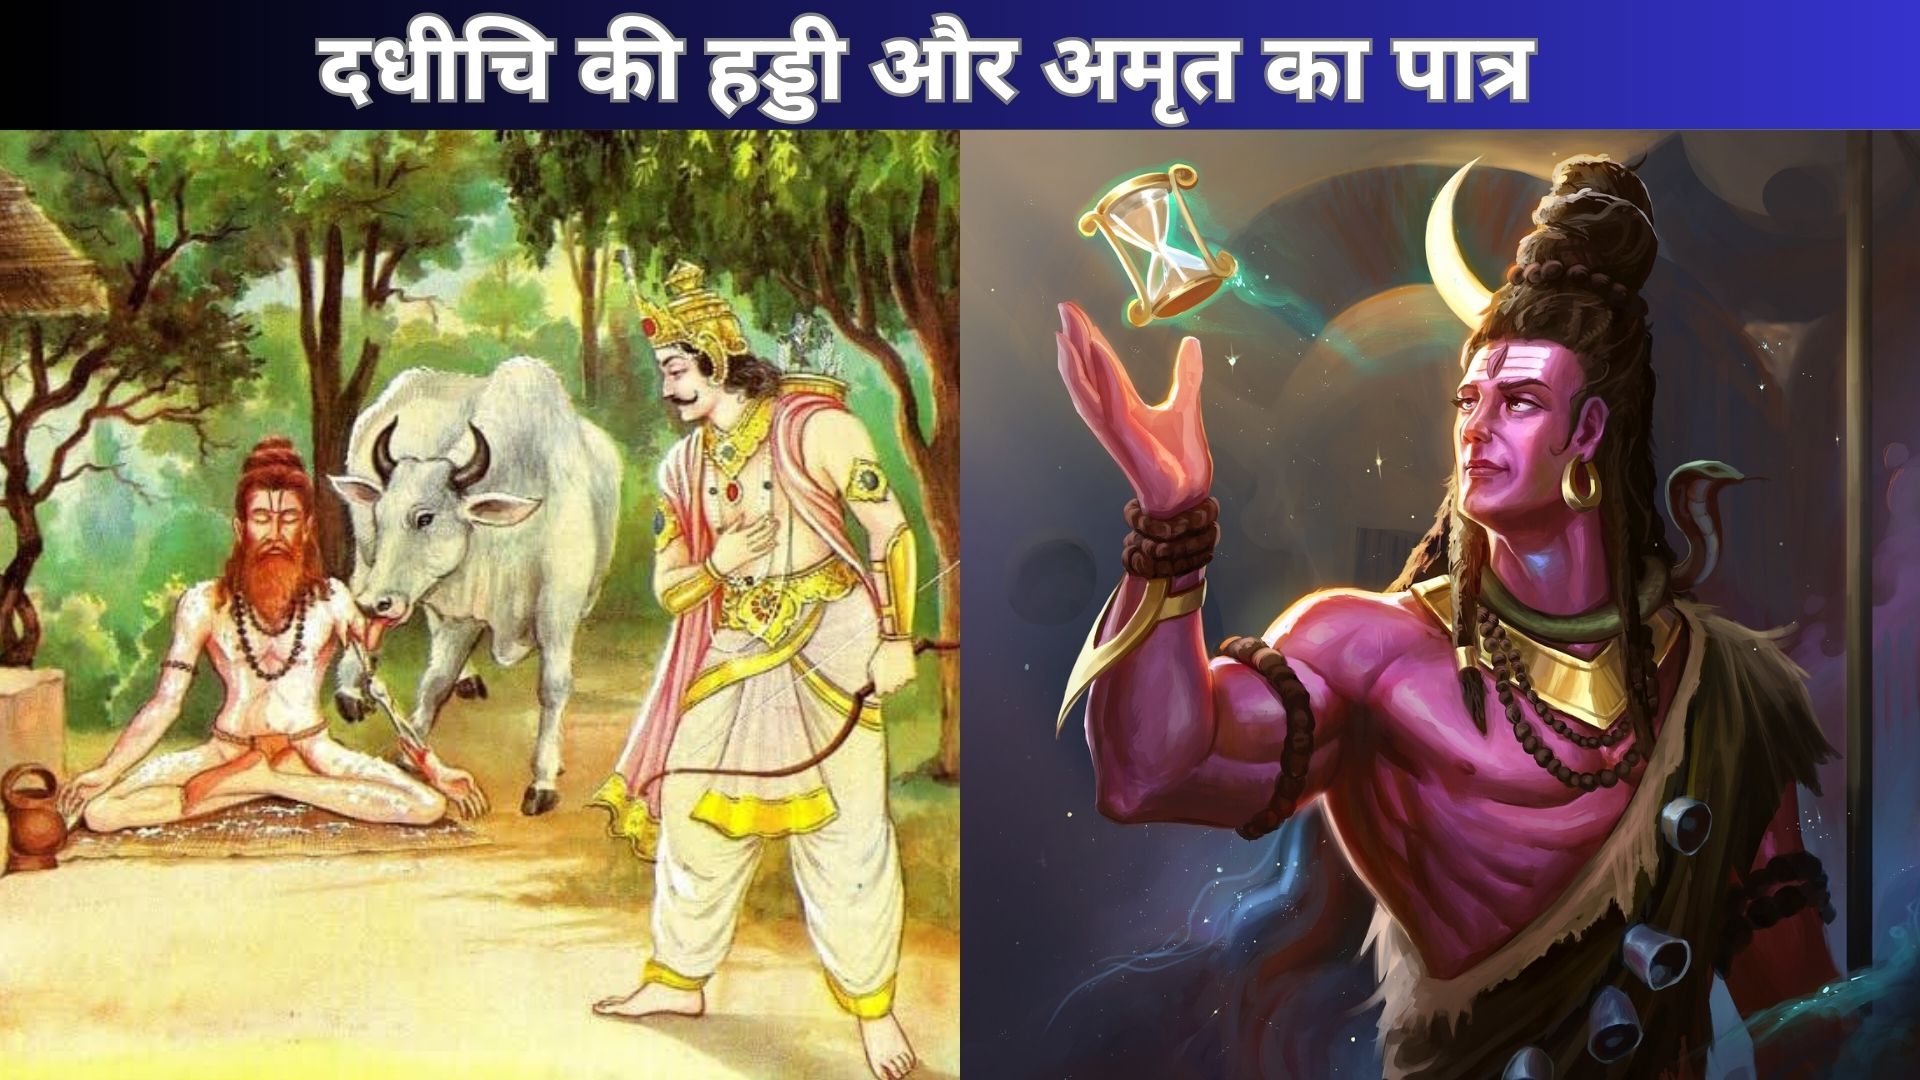 दधीचि की हड्डी और अमृत का पात्र | Lord Shiva Moral Values Story